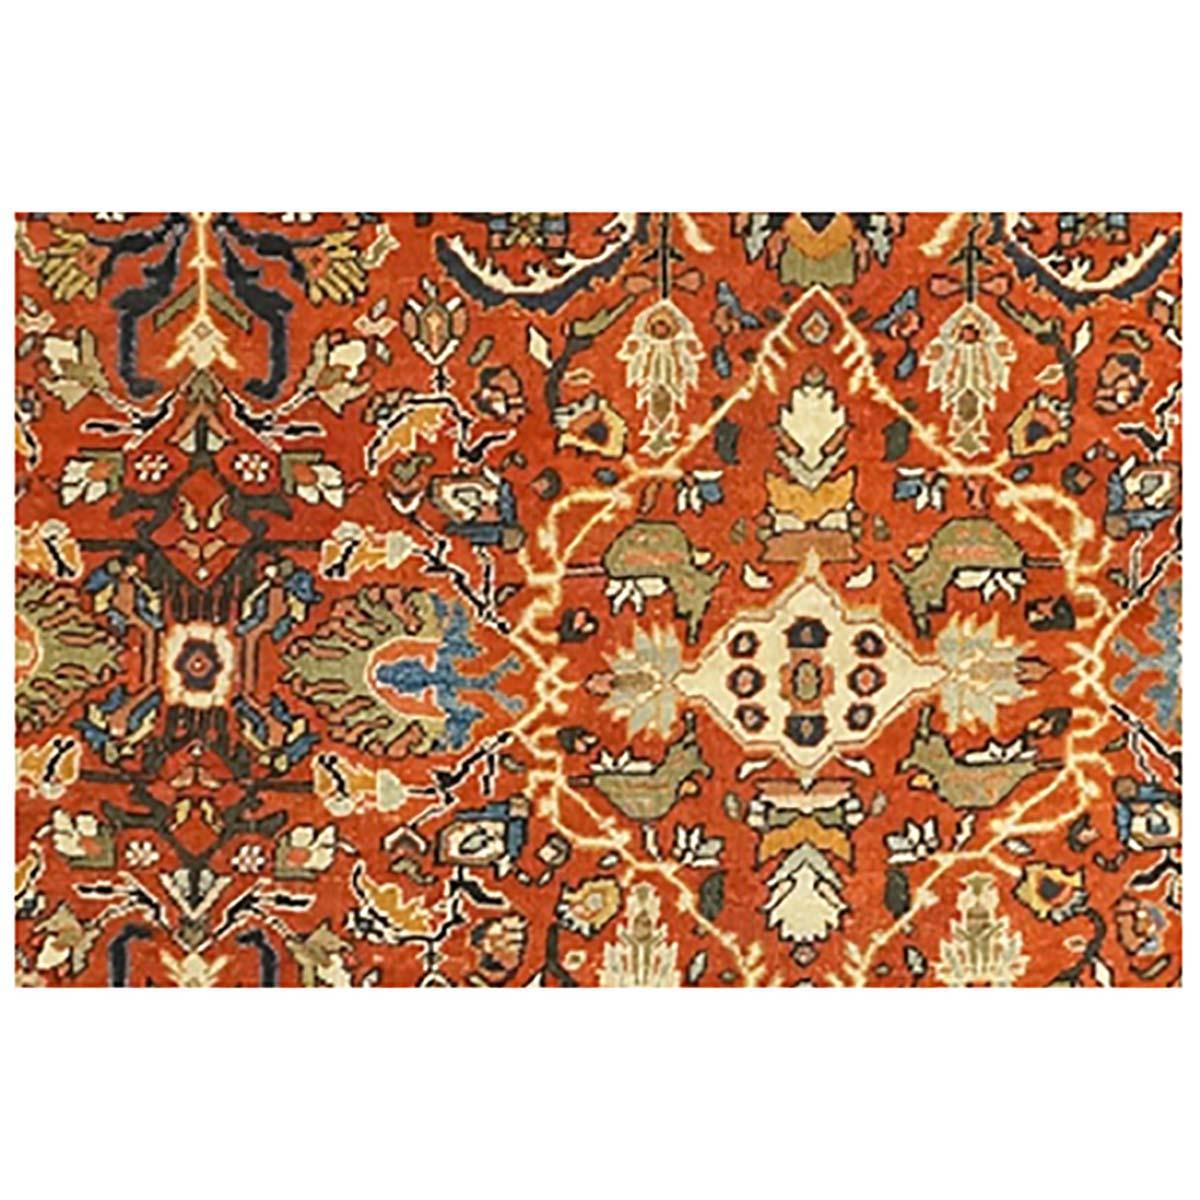 Ashly Fine Rugs präsentiert einen exquisiten 1910 Antique Persian Sultanabad 10x12 Red Handmade Rug. Die 1808 gegründete Stadt Sultanabad hat sich zu einer der wichtigsten Teppichproduktionsstädte im Iran entwickelt. Persische Sultanabad-Teppiche